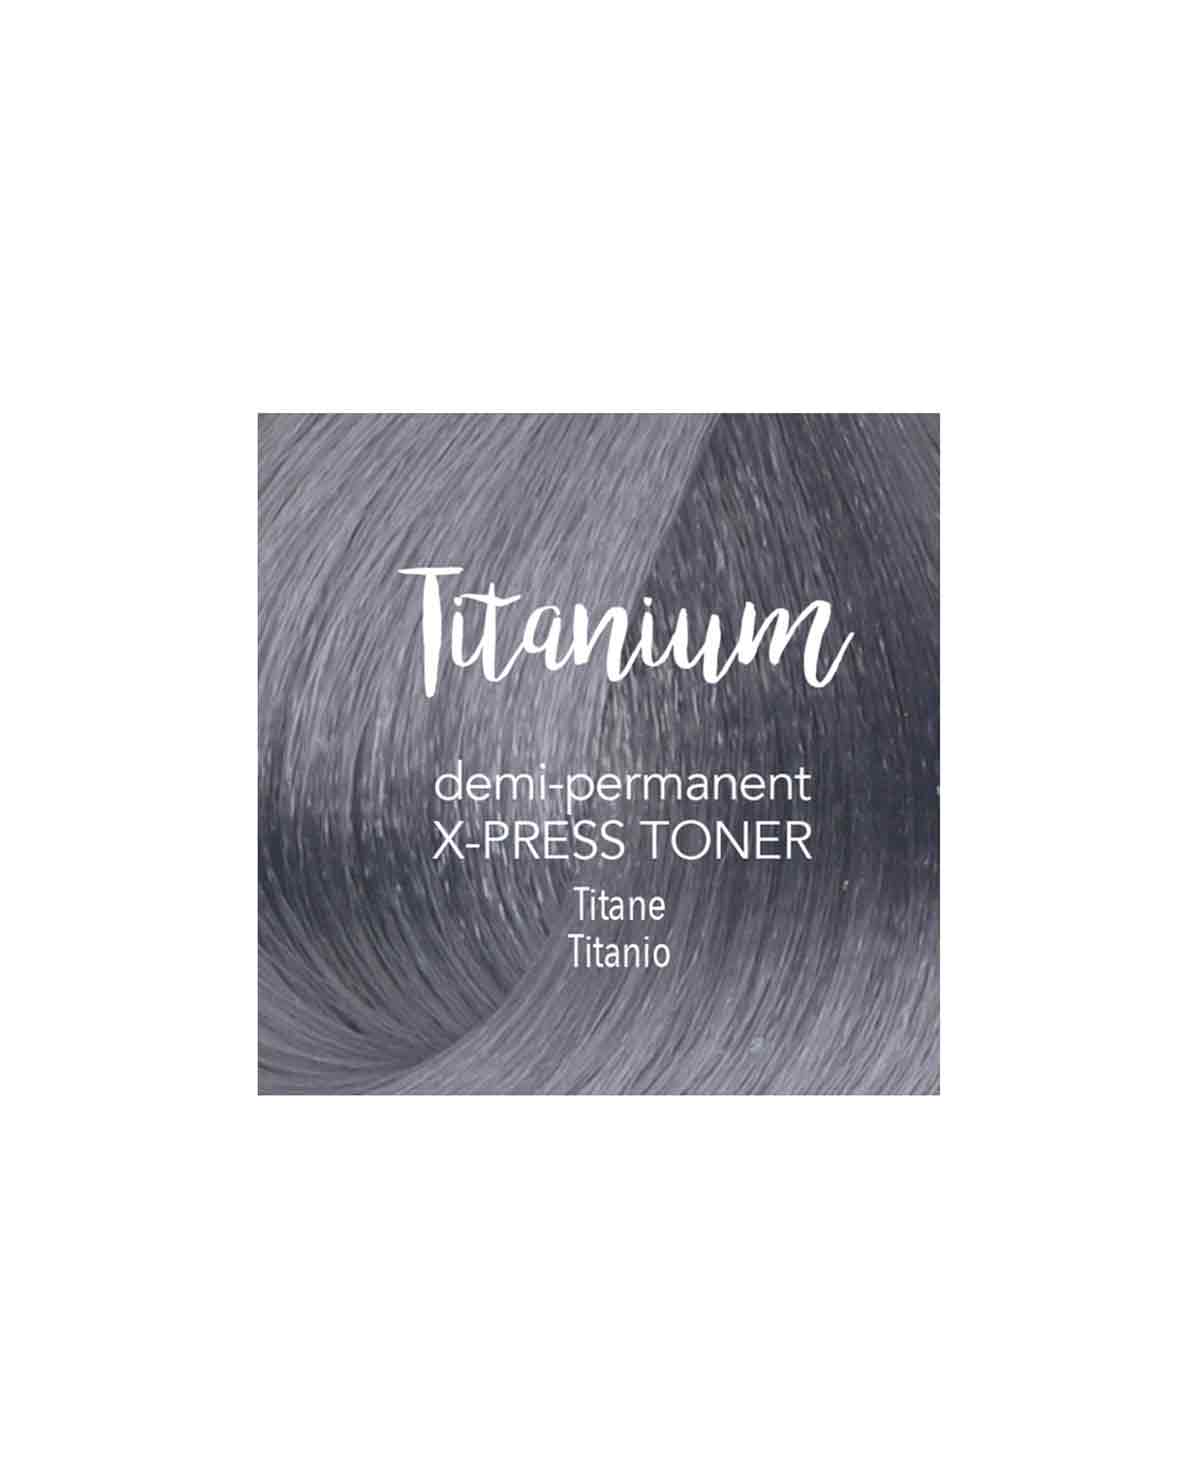 Mydentity X-Press Toner Titanium 58g